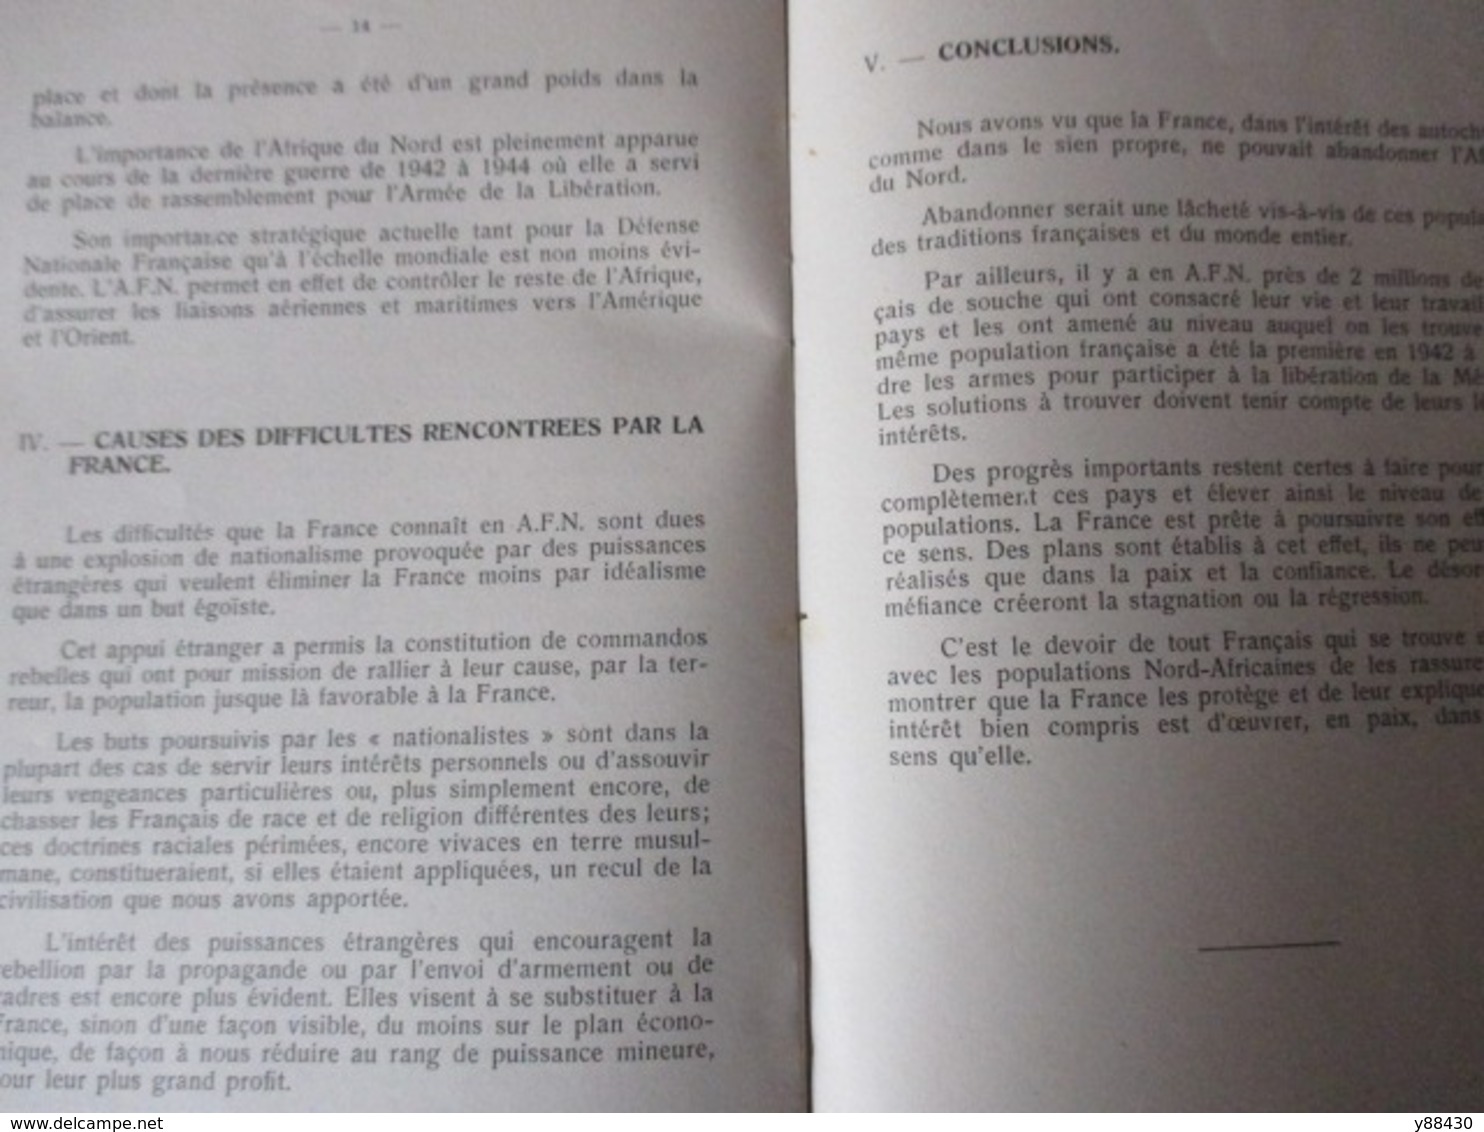 Notice AFRIQUE FRANCAISE DU NORD de 1955 - pour les appelés à servir en AFN . Etat Major 3è Bureau -18 pages - 13 photos